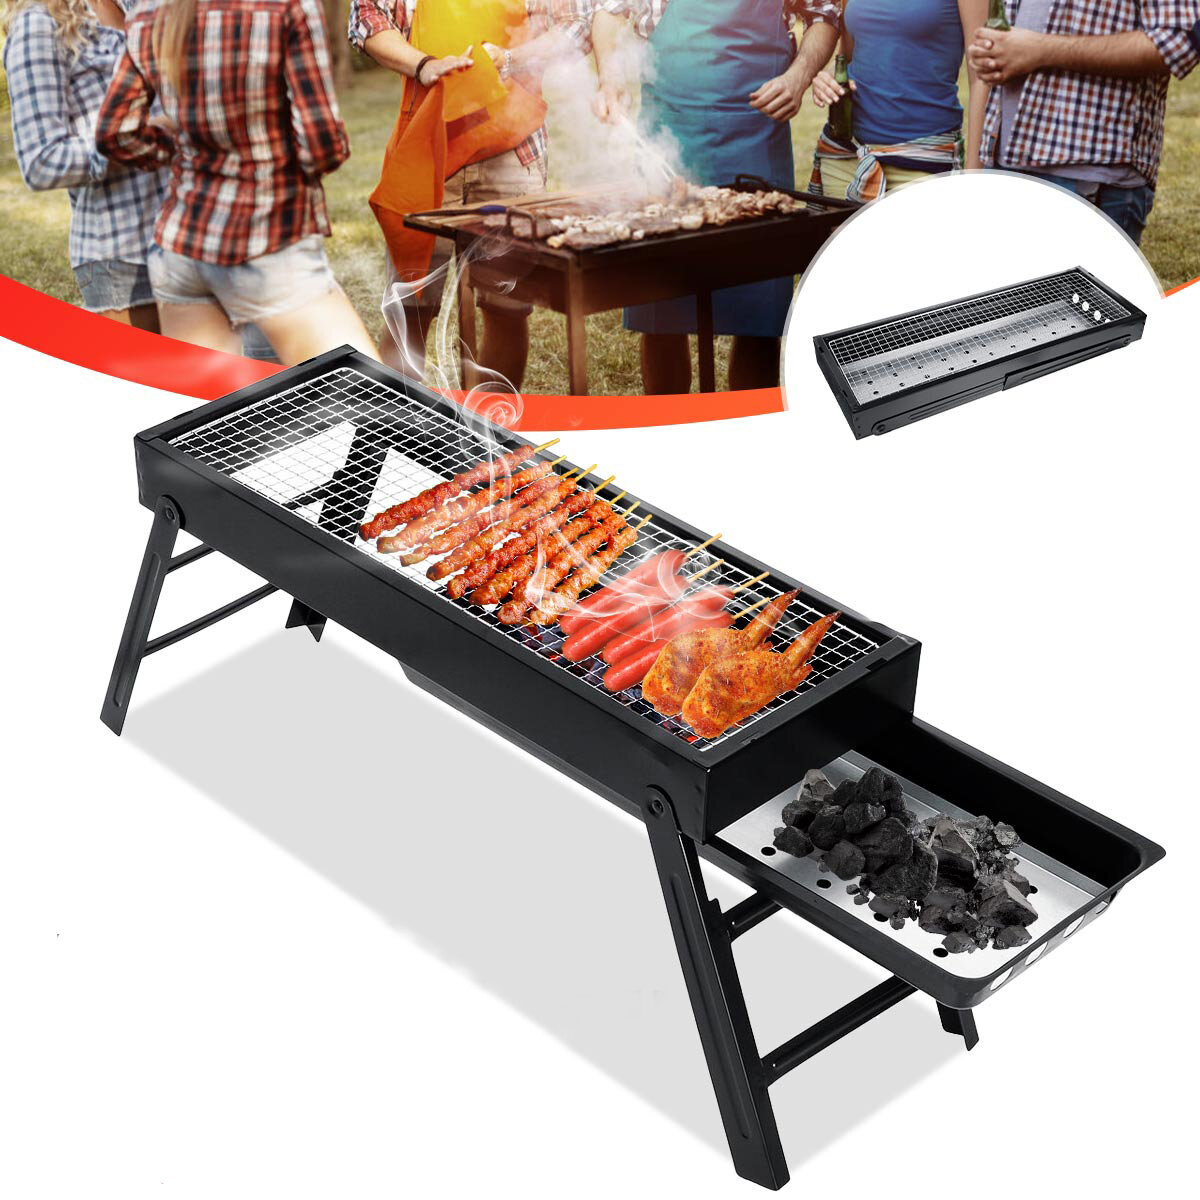 Parrilla de hierro plegable para barbacoa de patio de 60x23x33cm, parrilla de carbón, estufa para cocinar al aire libre para acampar y hacer picnic